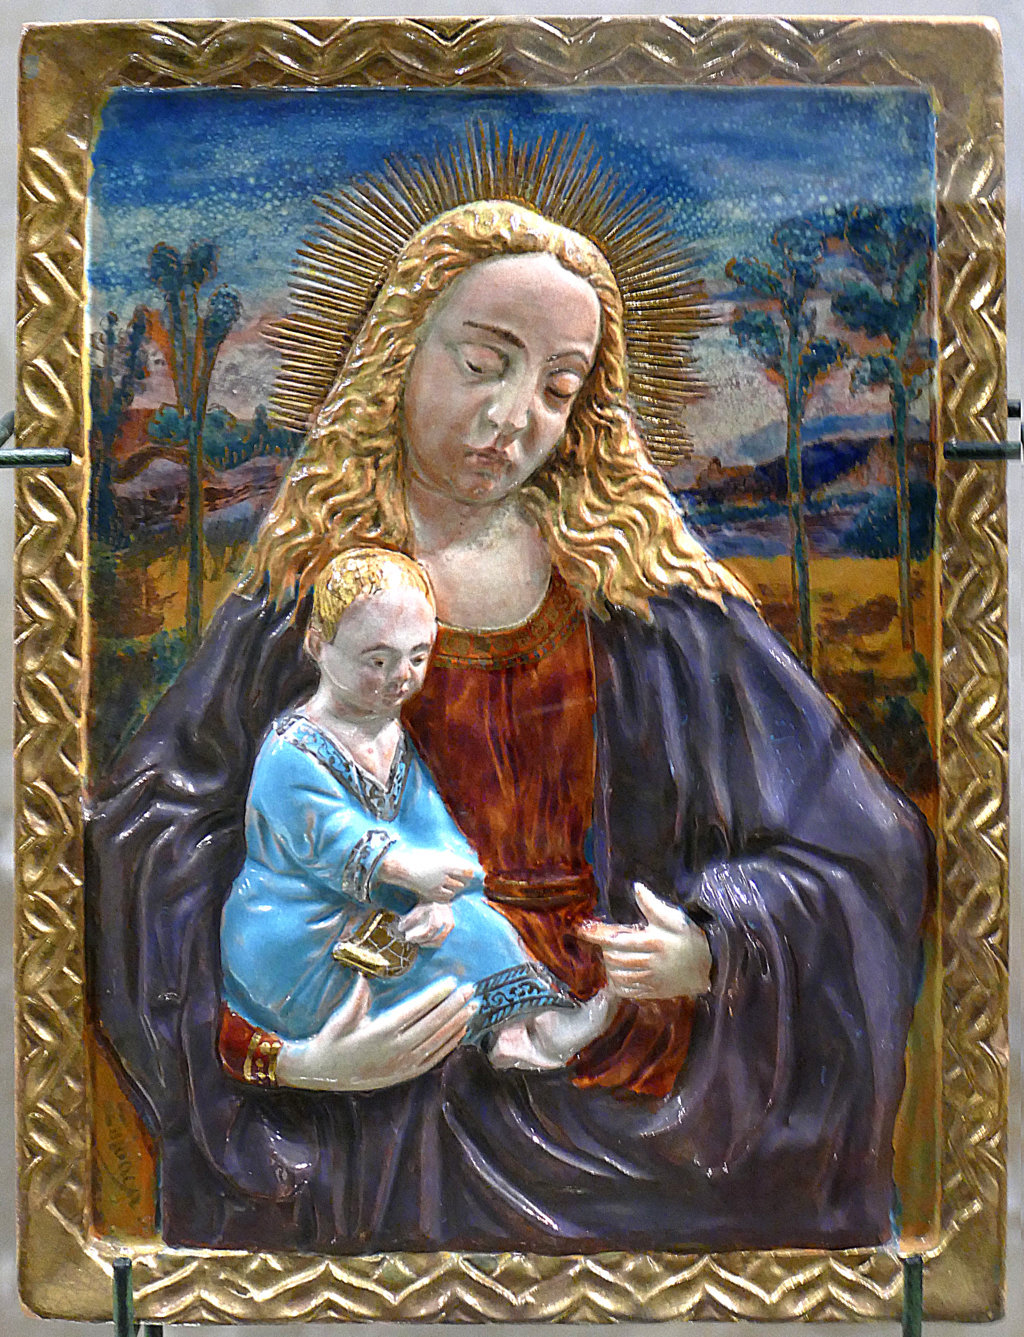 01216. Virgen con Niño a molde. Museo Zuloaga. Segovia.